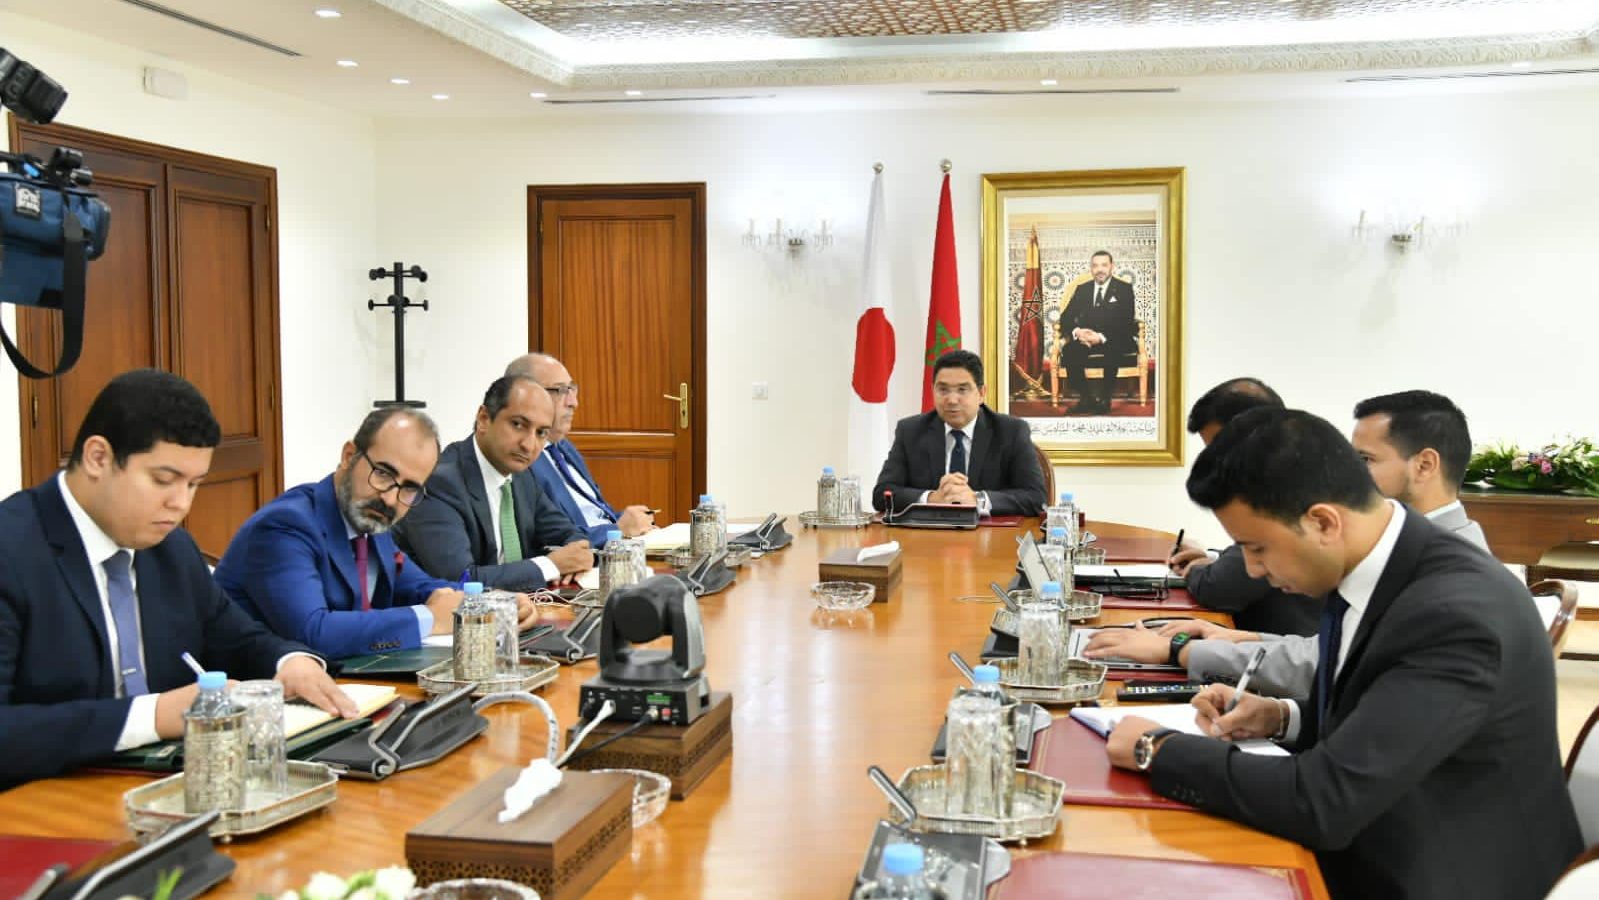 وفق الخارجية المغربية/ اليابان تُحمّل تونس مسؤولية حضور زعيم “البوليساريو”